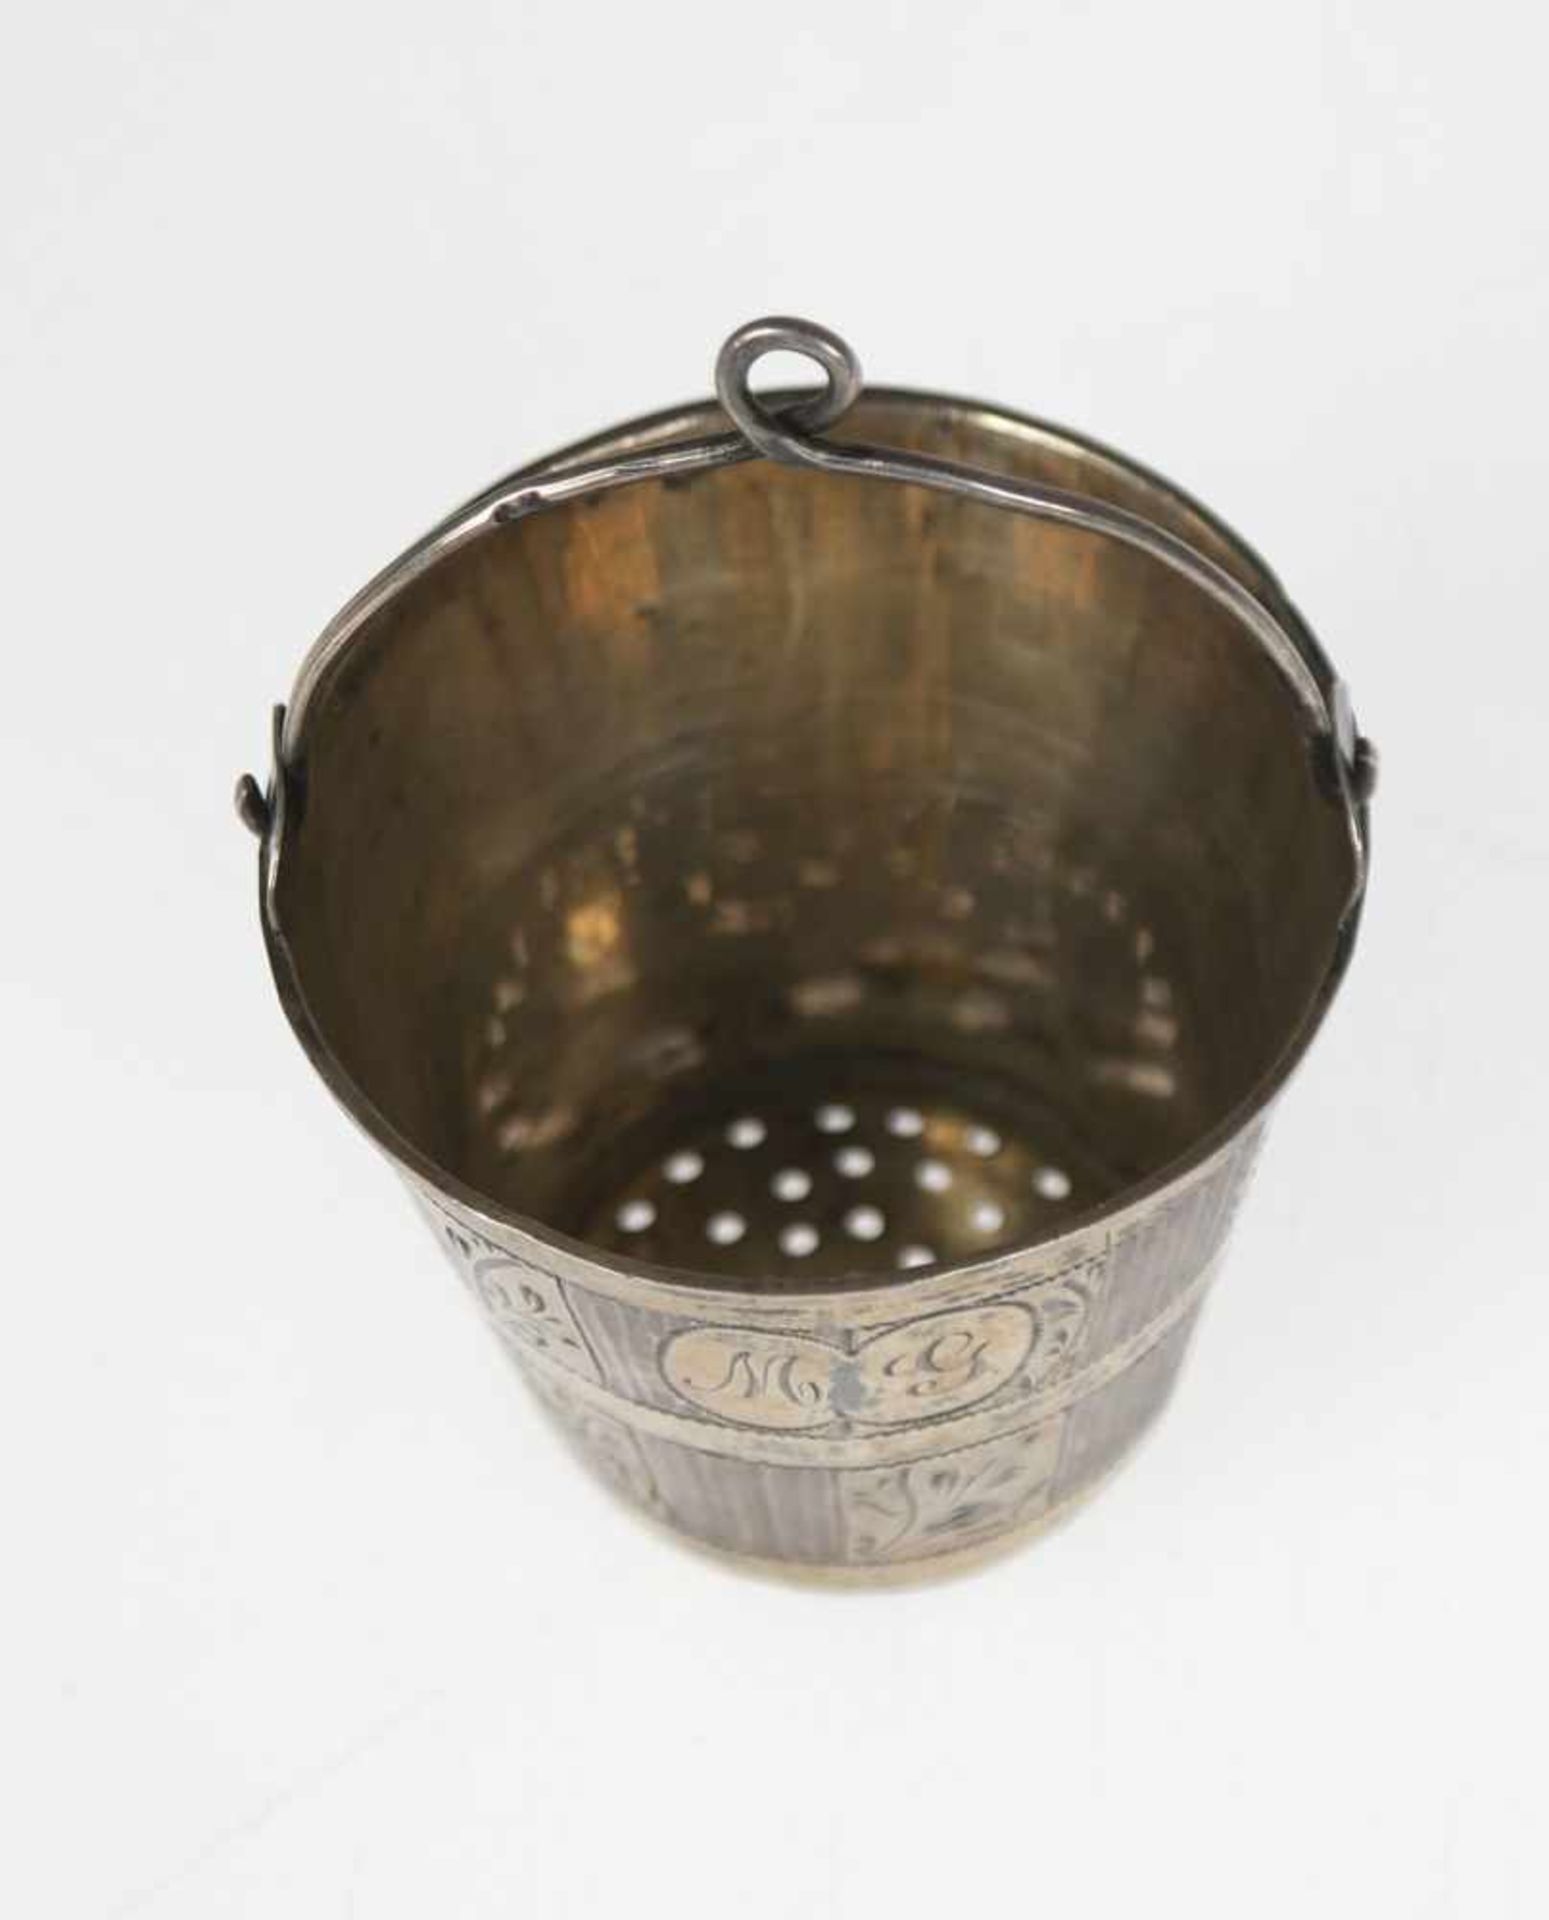 Teesieb, Rußland, 84 Zol. Silber, punziert, ca. 15 g, innen vergoldet, in Form eines Eimers, fein - Image 2 of 2